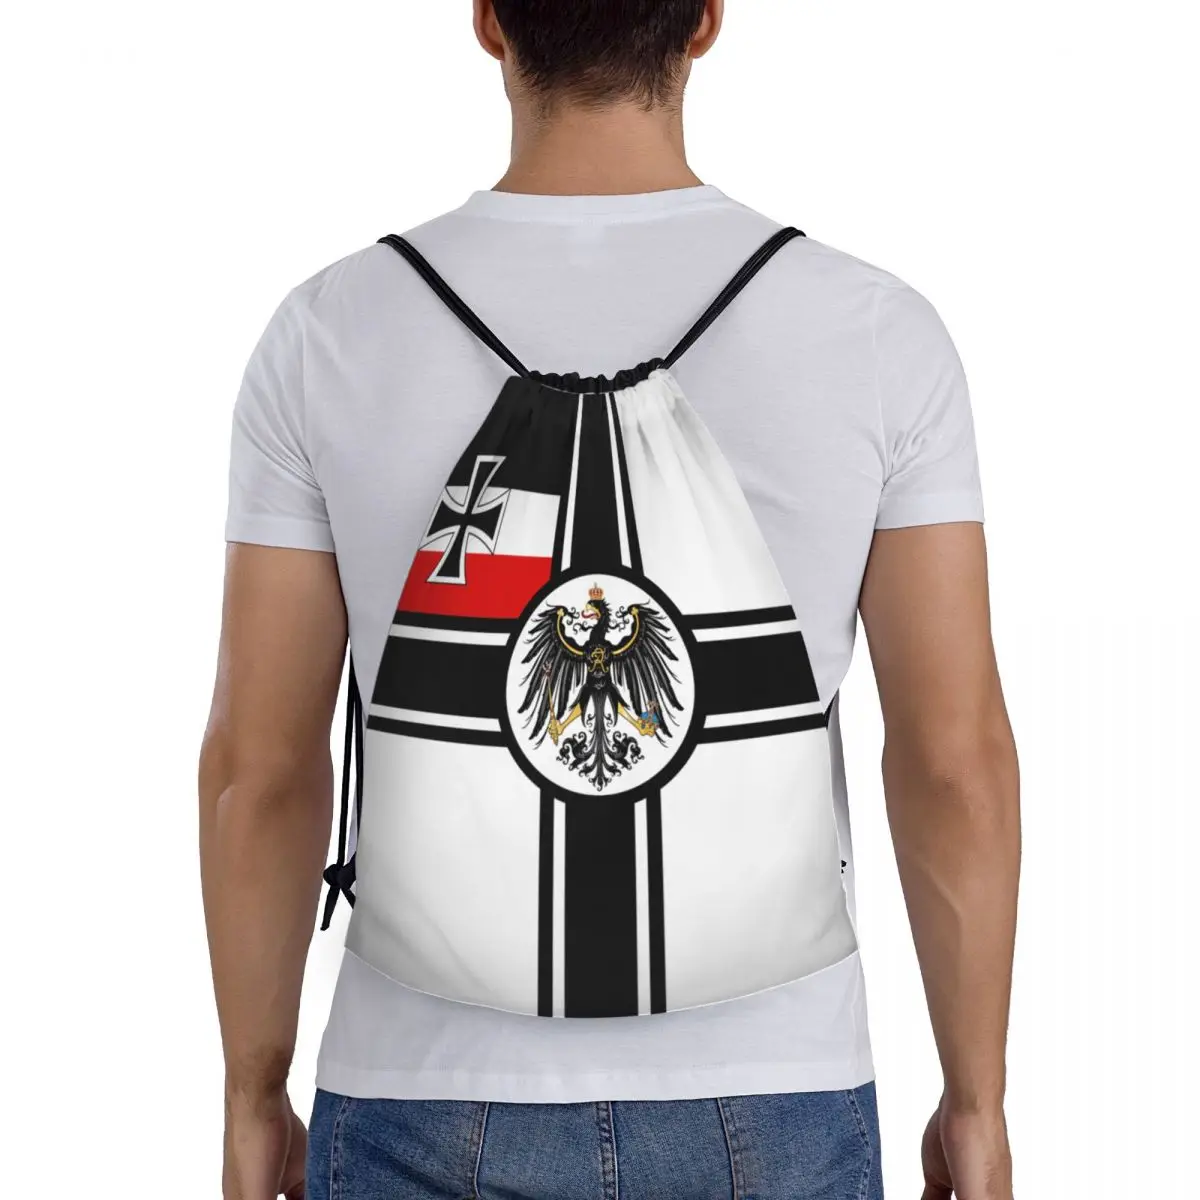 Imperio alemán DK Reich, la Guerra de la Bandera de Cordón Mochila Bolsas Ligero Alemania Patriótica Deportes de Gimnasio Sackpack Sacos para ir de Compras